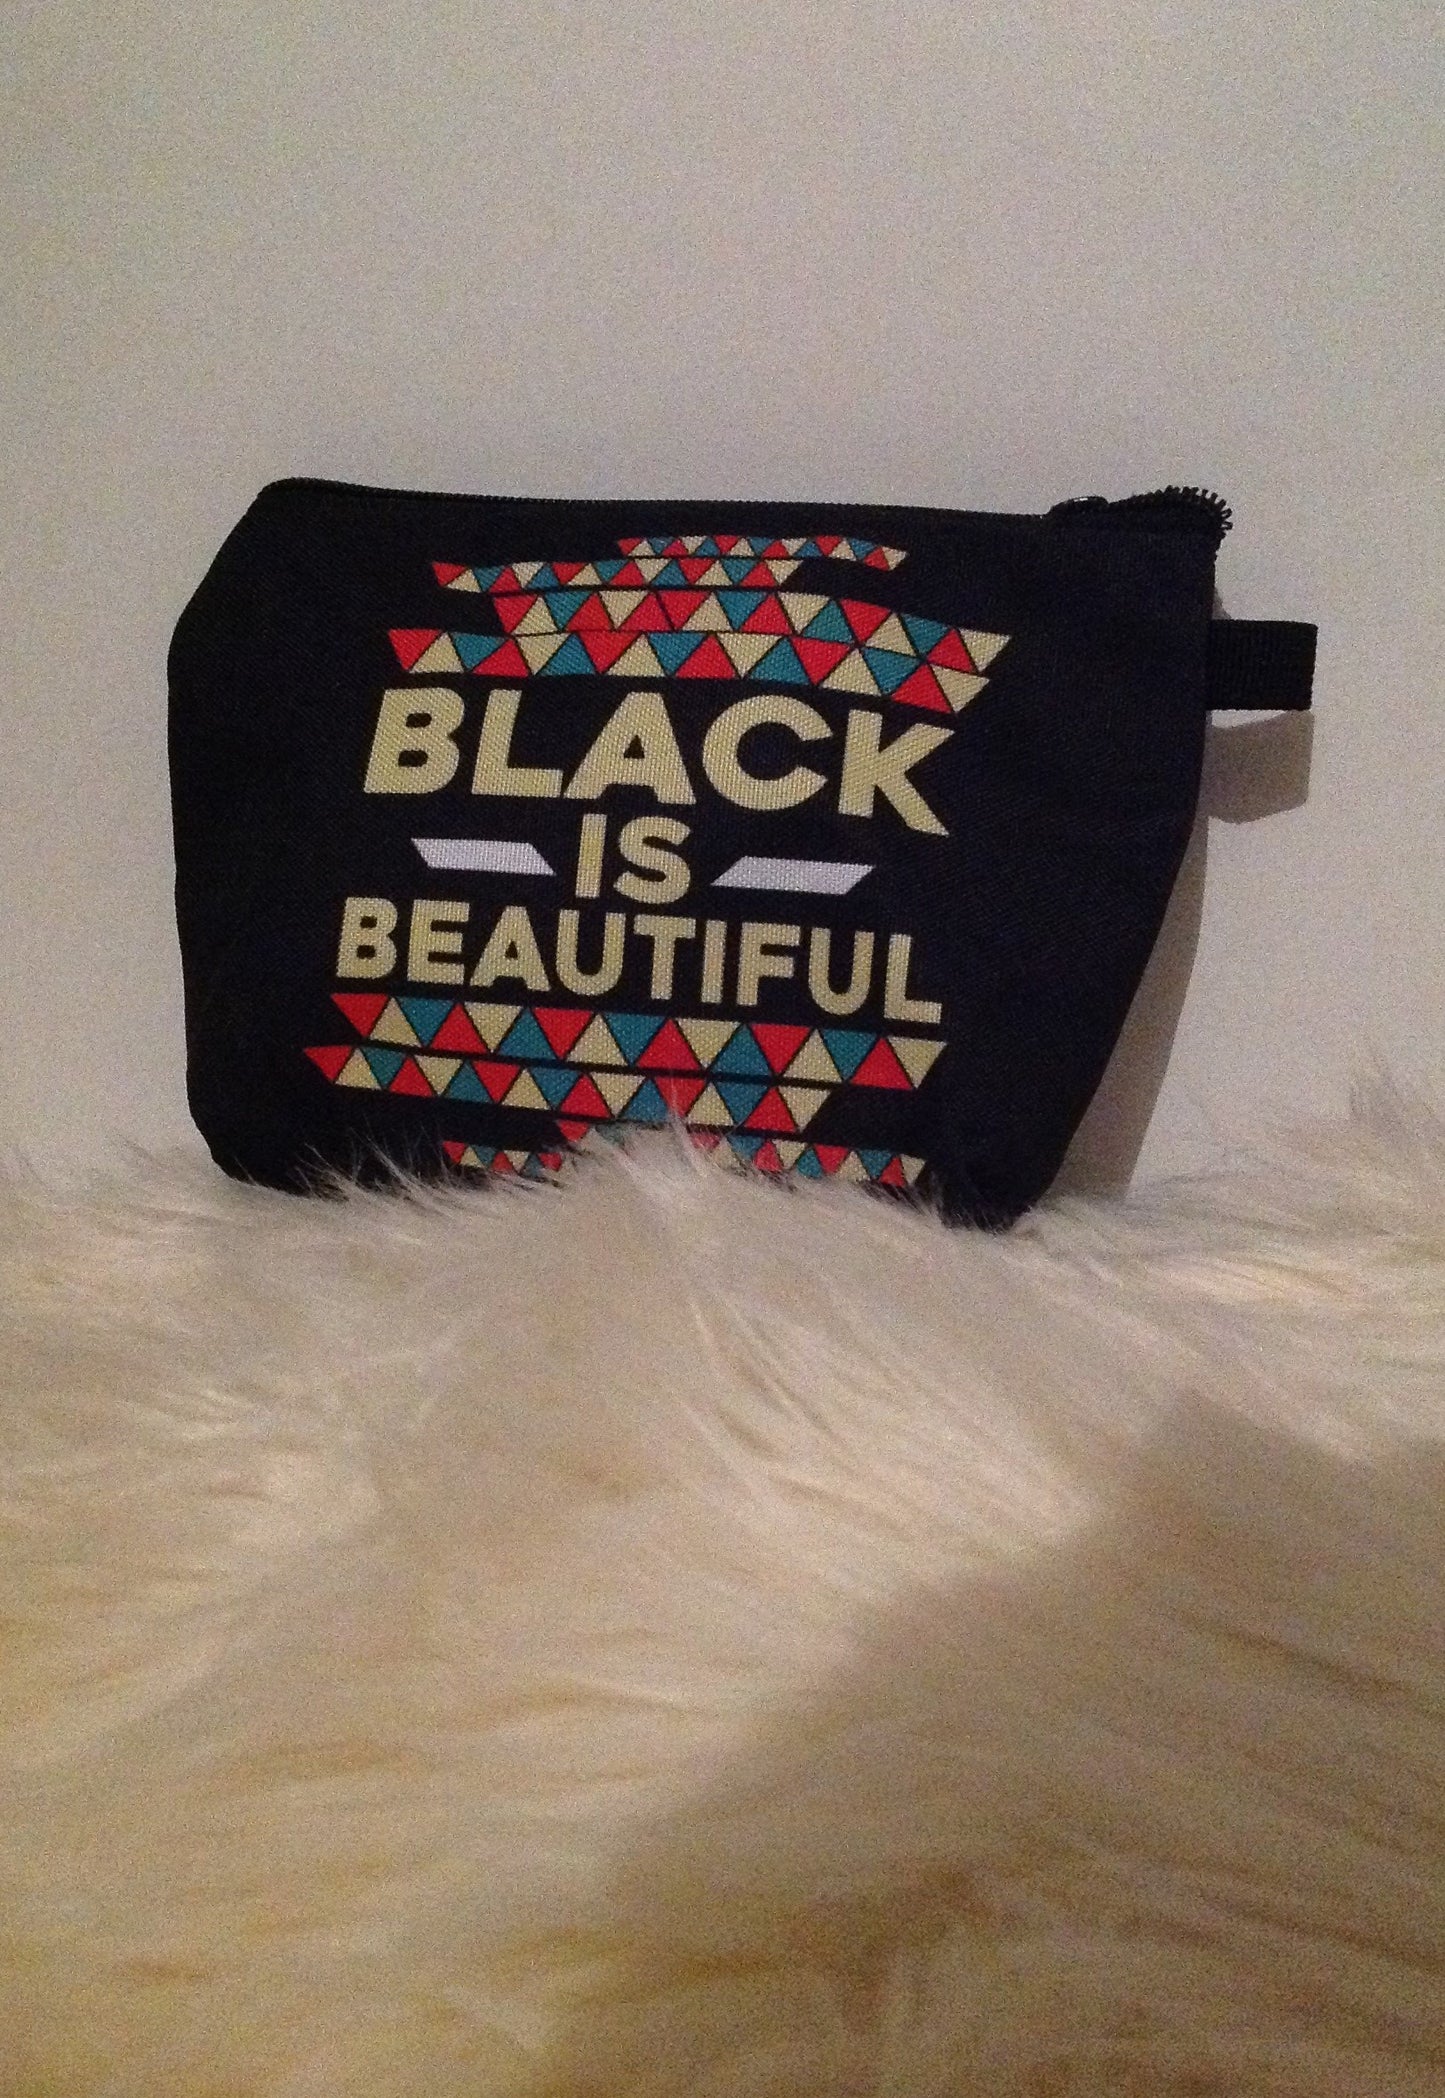 Beautifully Black Beauty Cosmetic Bag